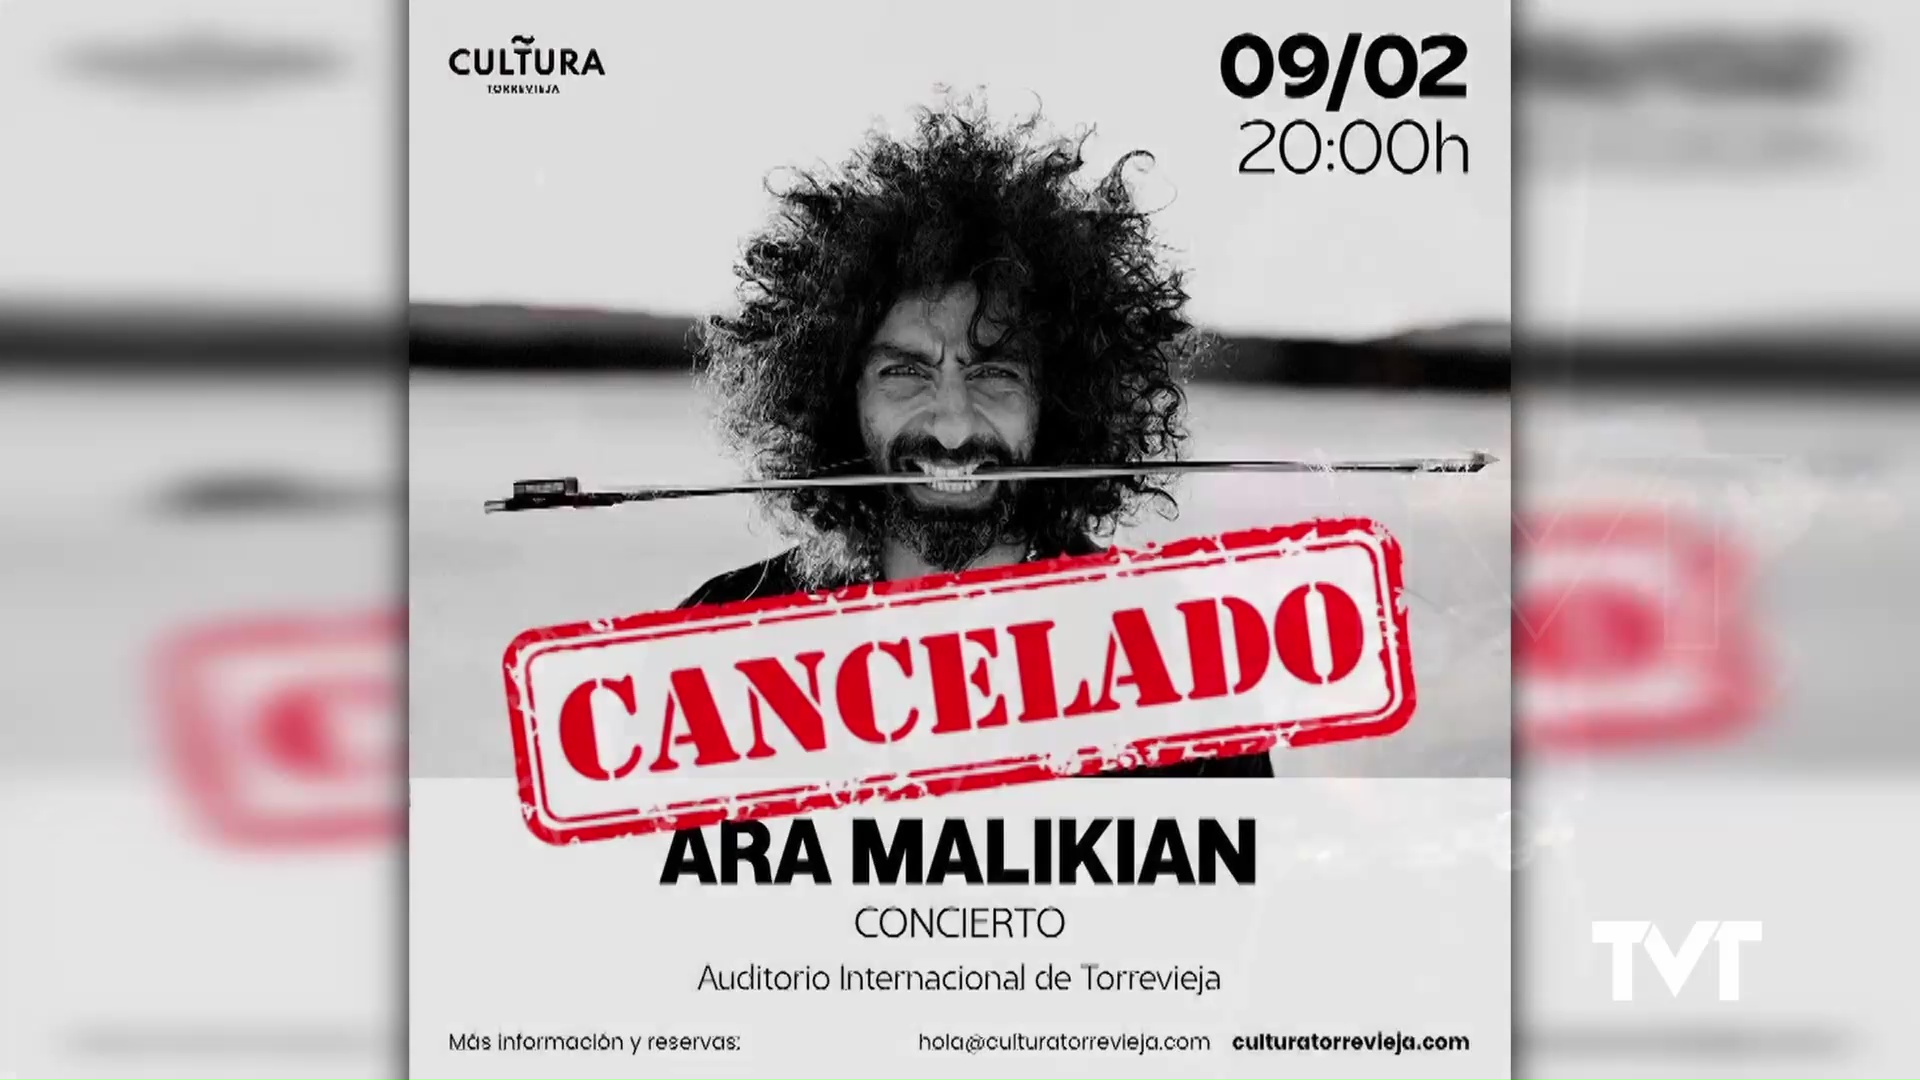 Imagen de Cancelado el concierto de Ara Malikian en Torrevieja